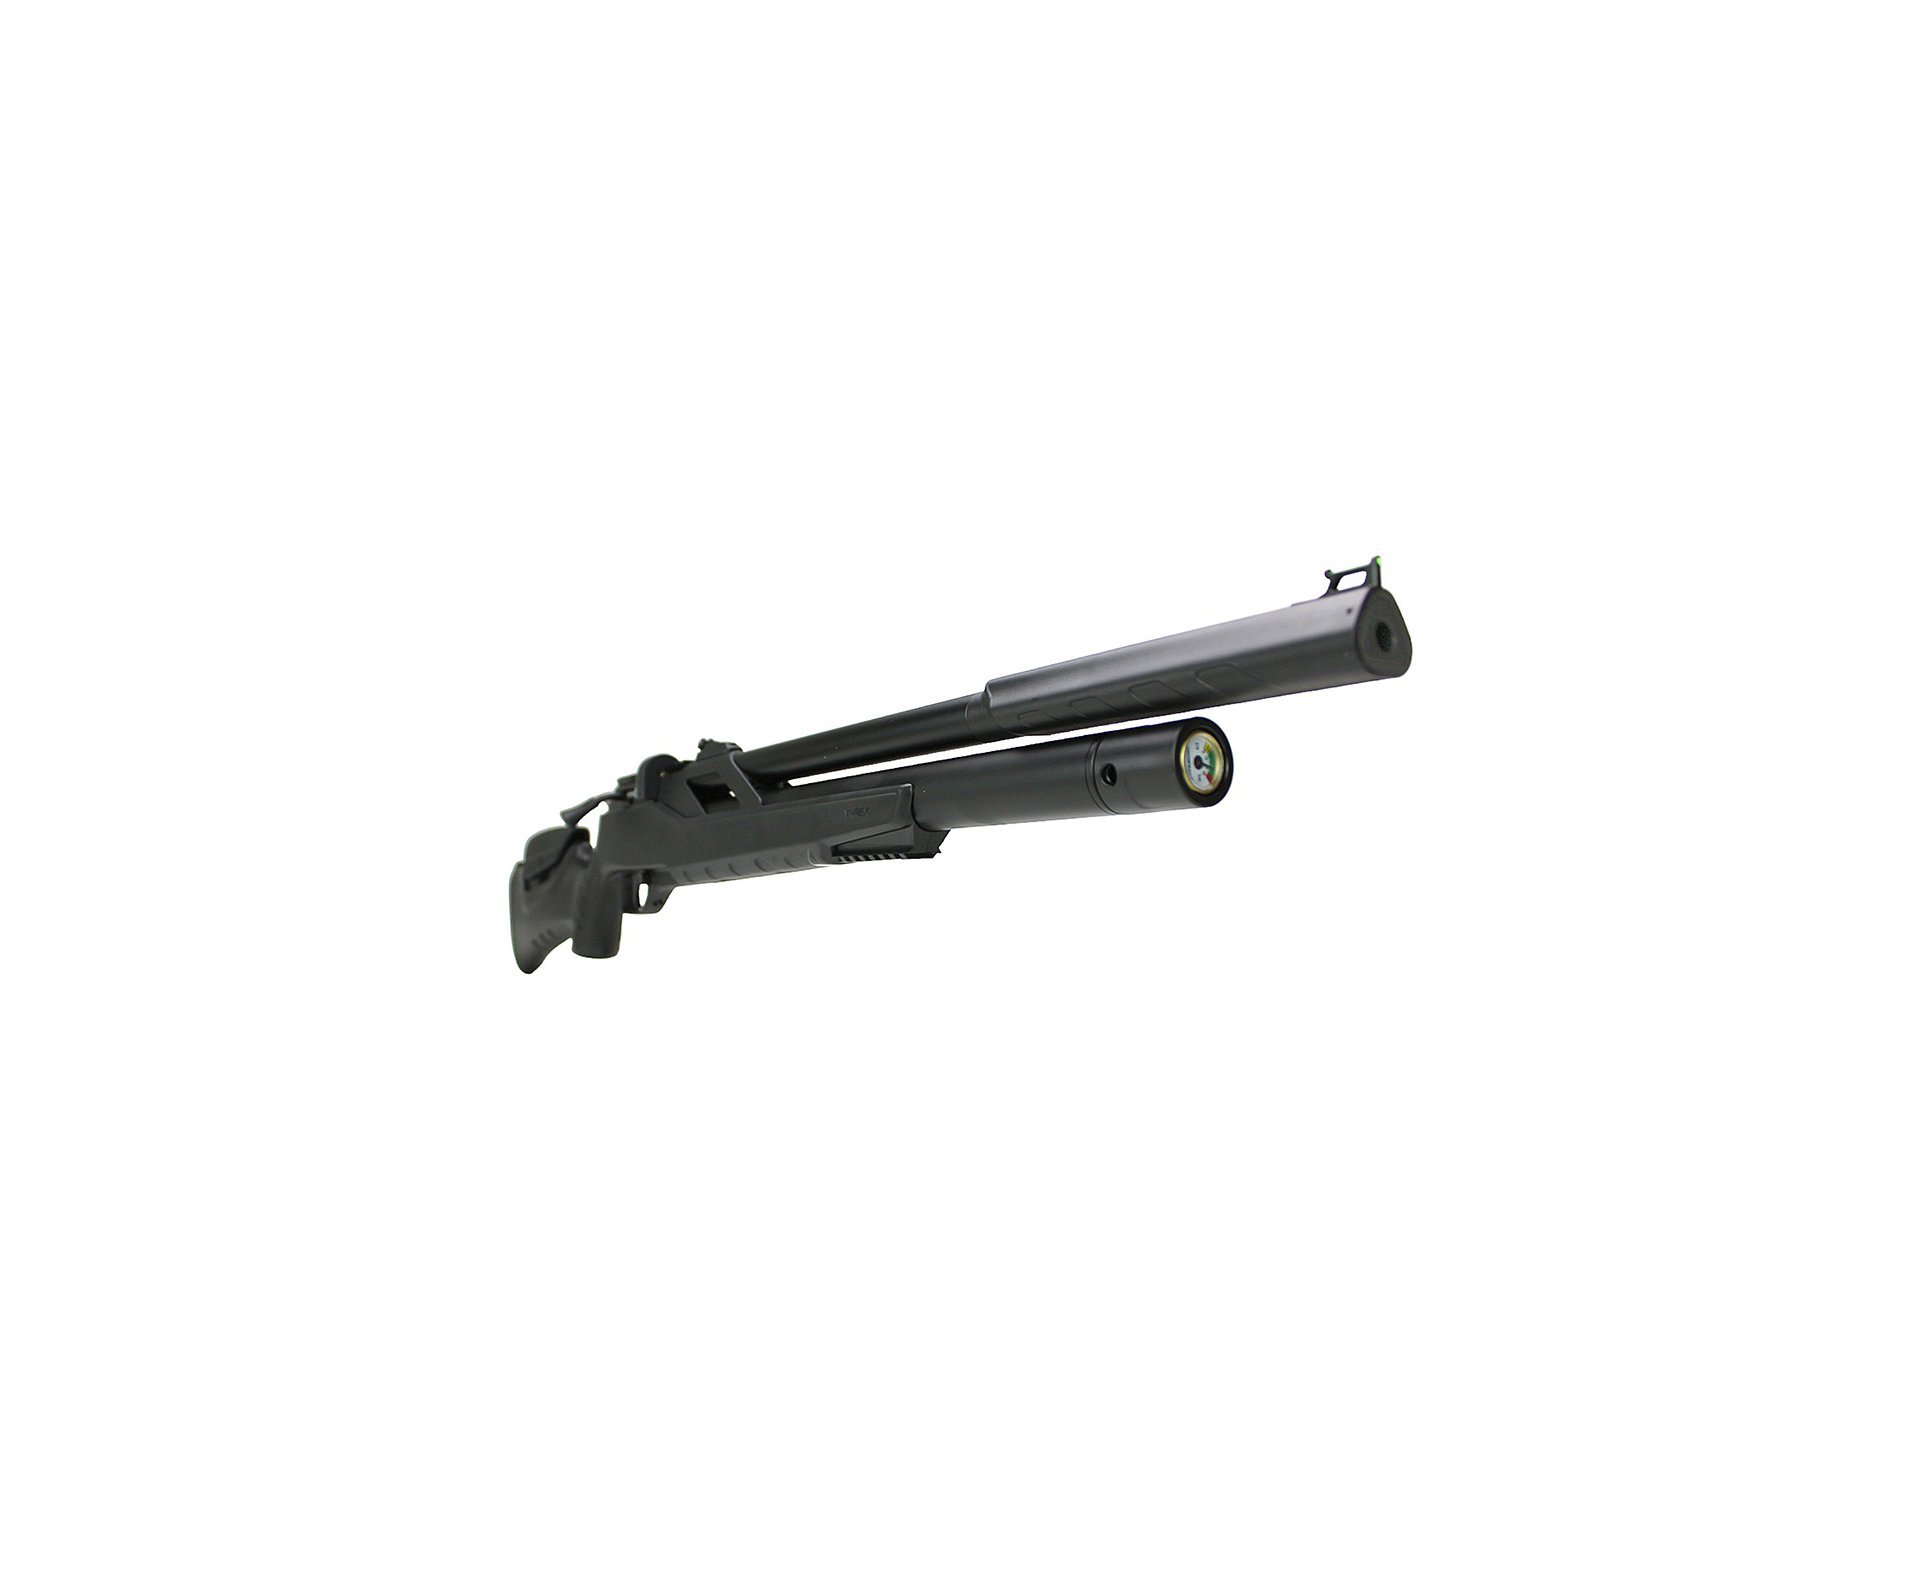 Carabina de Pressão PCP Artemis T-REX 4.5mm com Válvula Reguladora - Fixxar + Bomba + Luneta 4-16x50 + Case + Mount